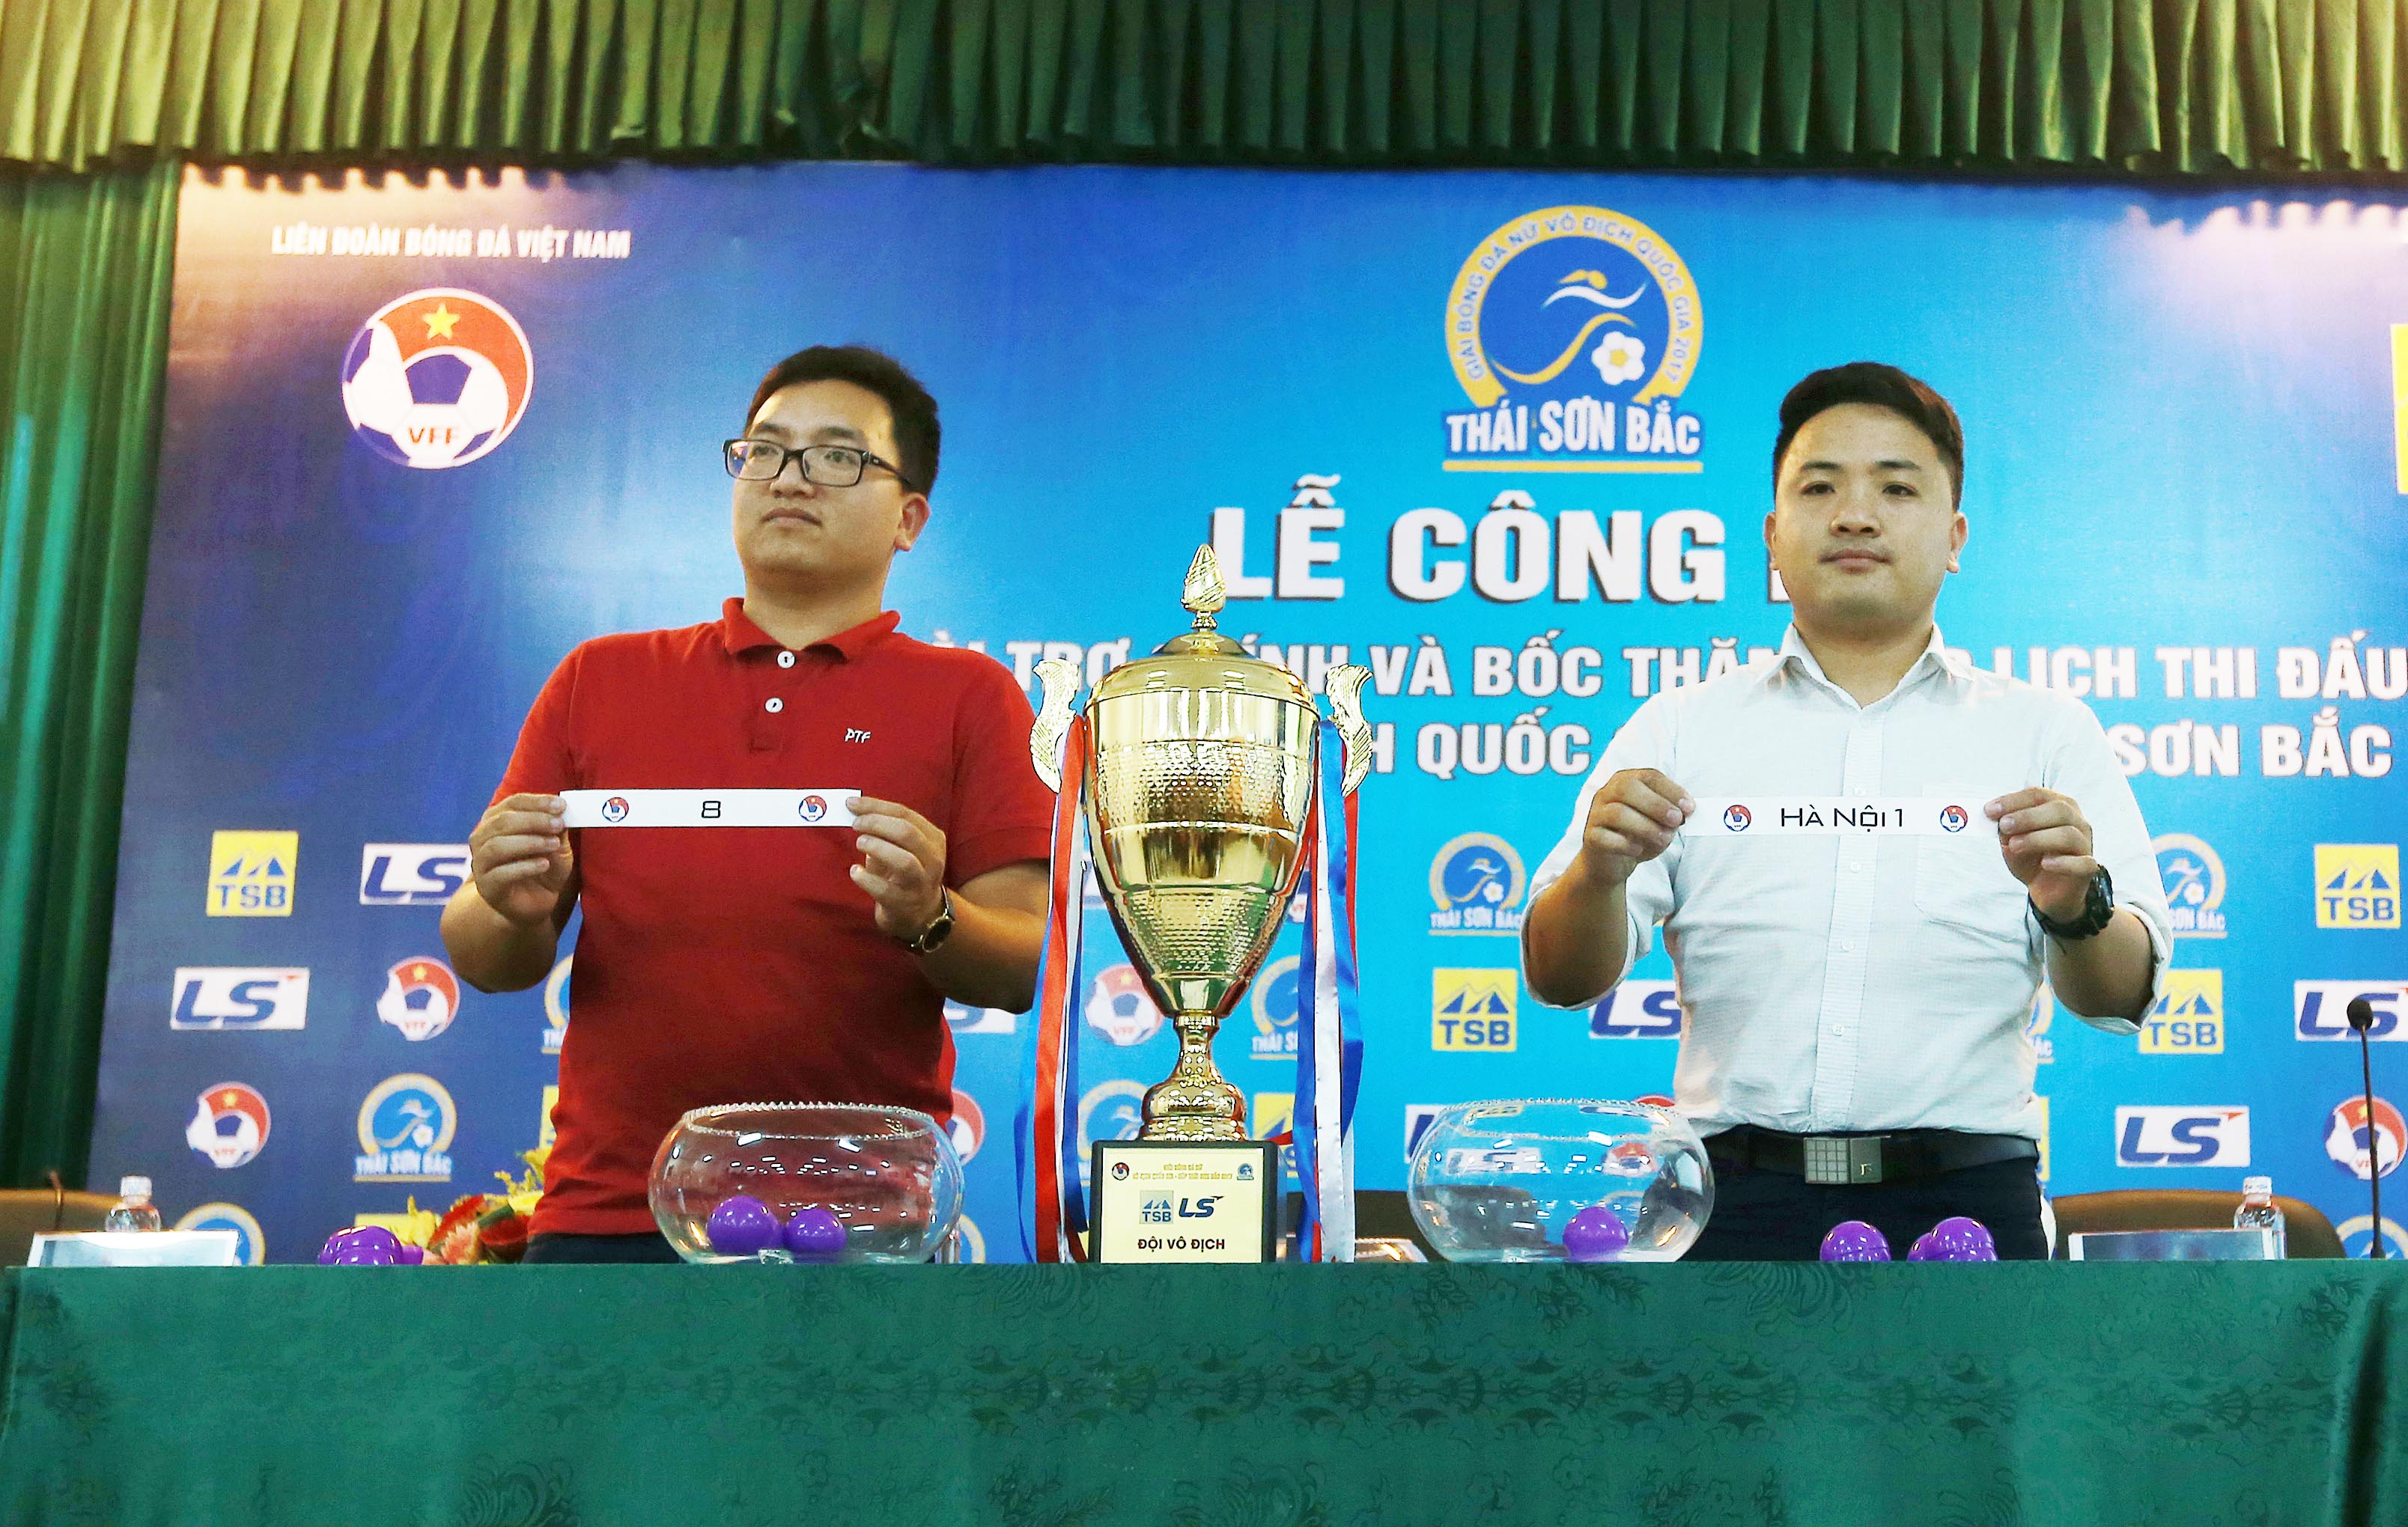 Bốc thăm xếp lịch thi đấu Giải bóng đá nữ VĐQG – Cúp Thái Sơn Bắc 2017